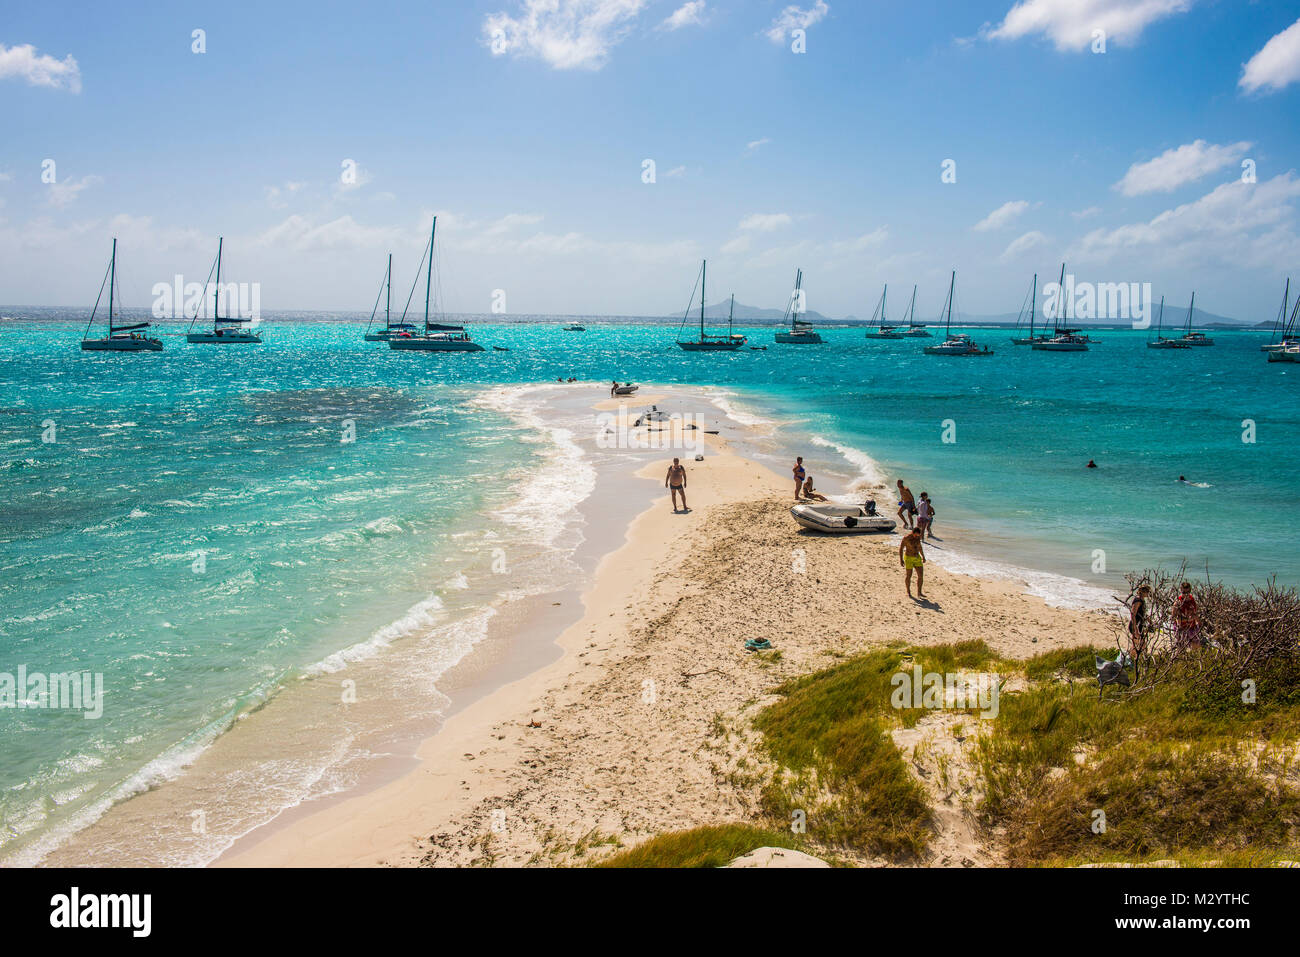 Banque de sable blanc dans les eaux turquoise de l'Tobago Cays, Saint Vincent et les Grenadines, Antilles Banque D'Images